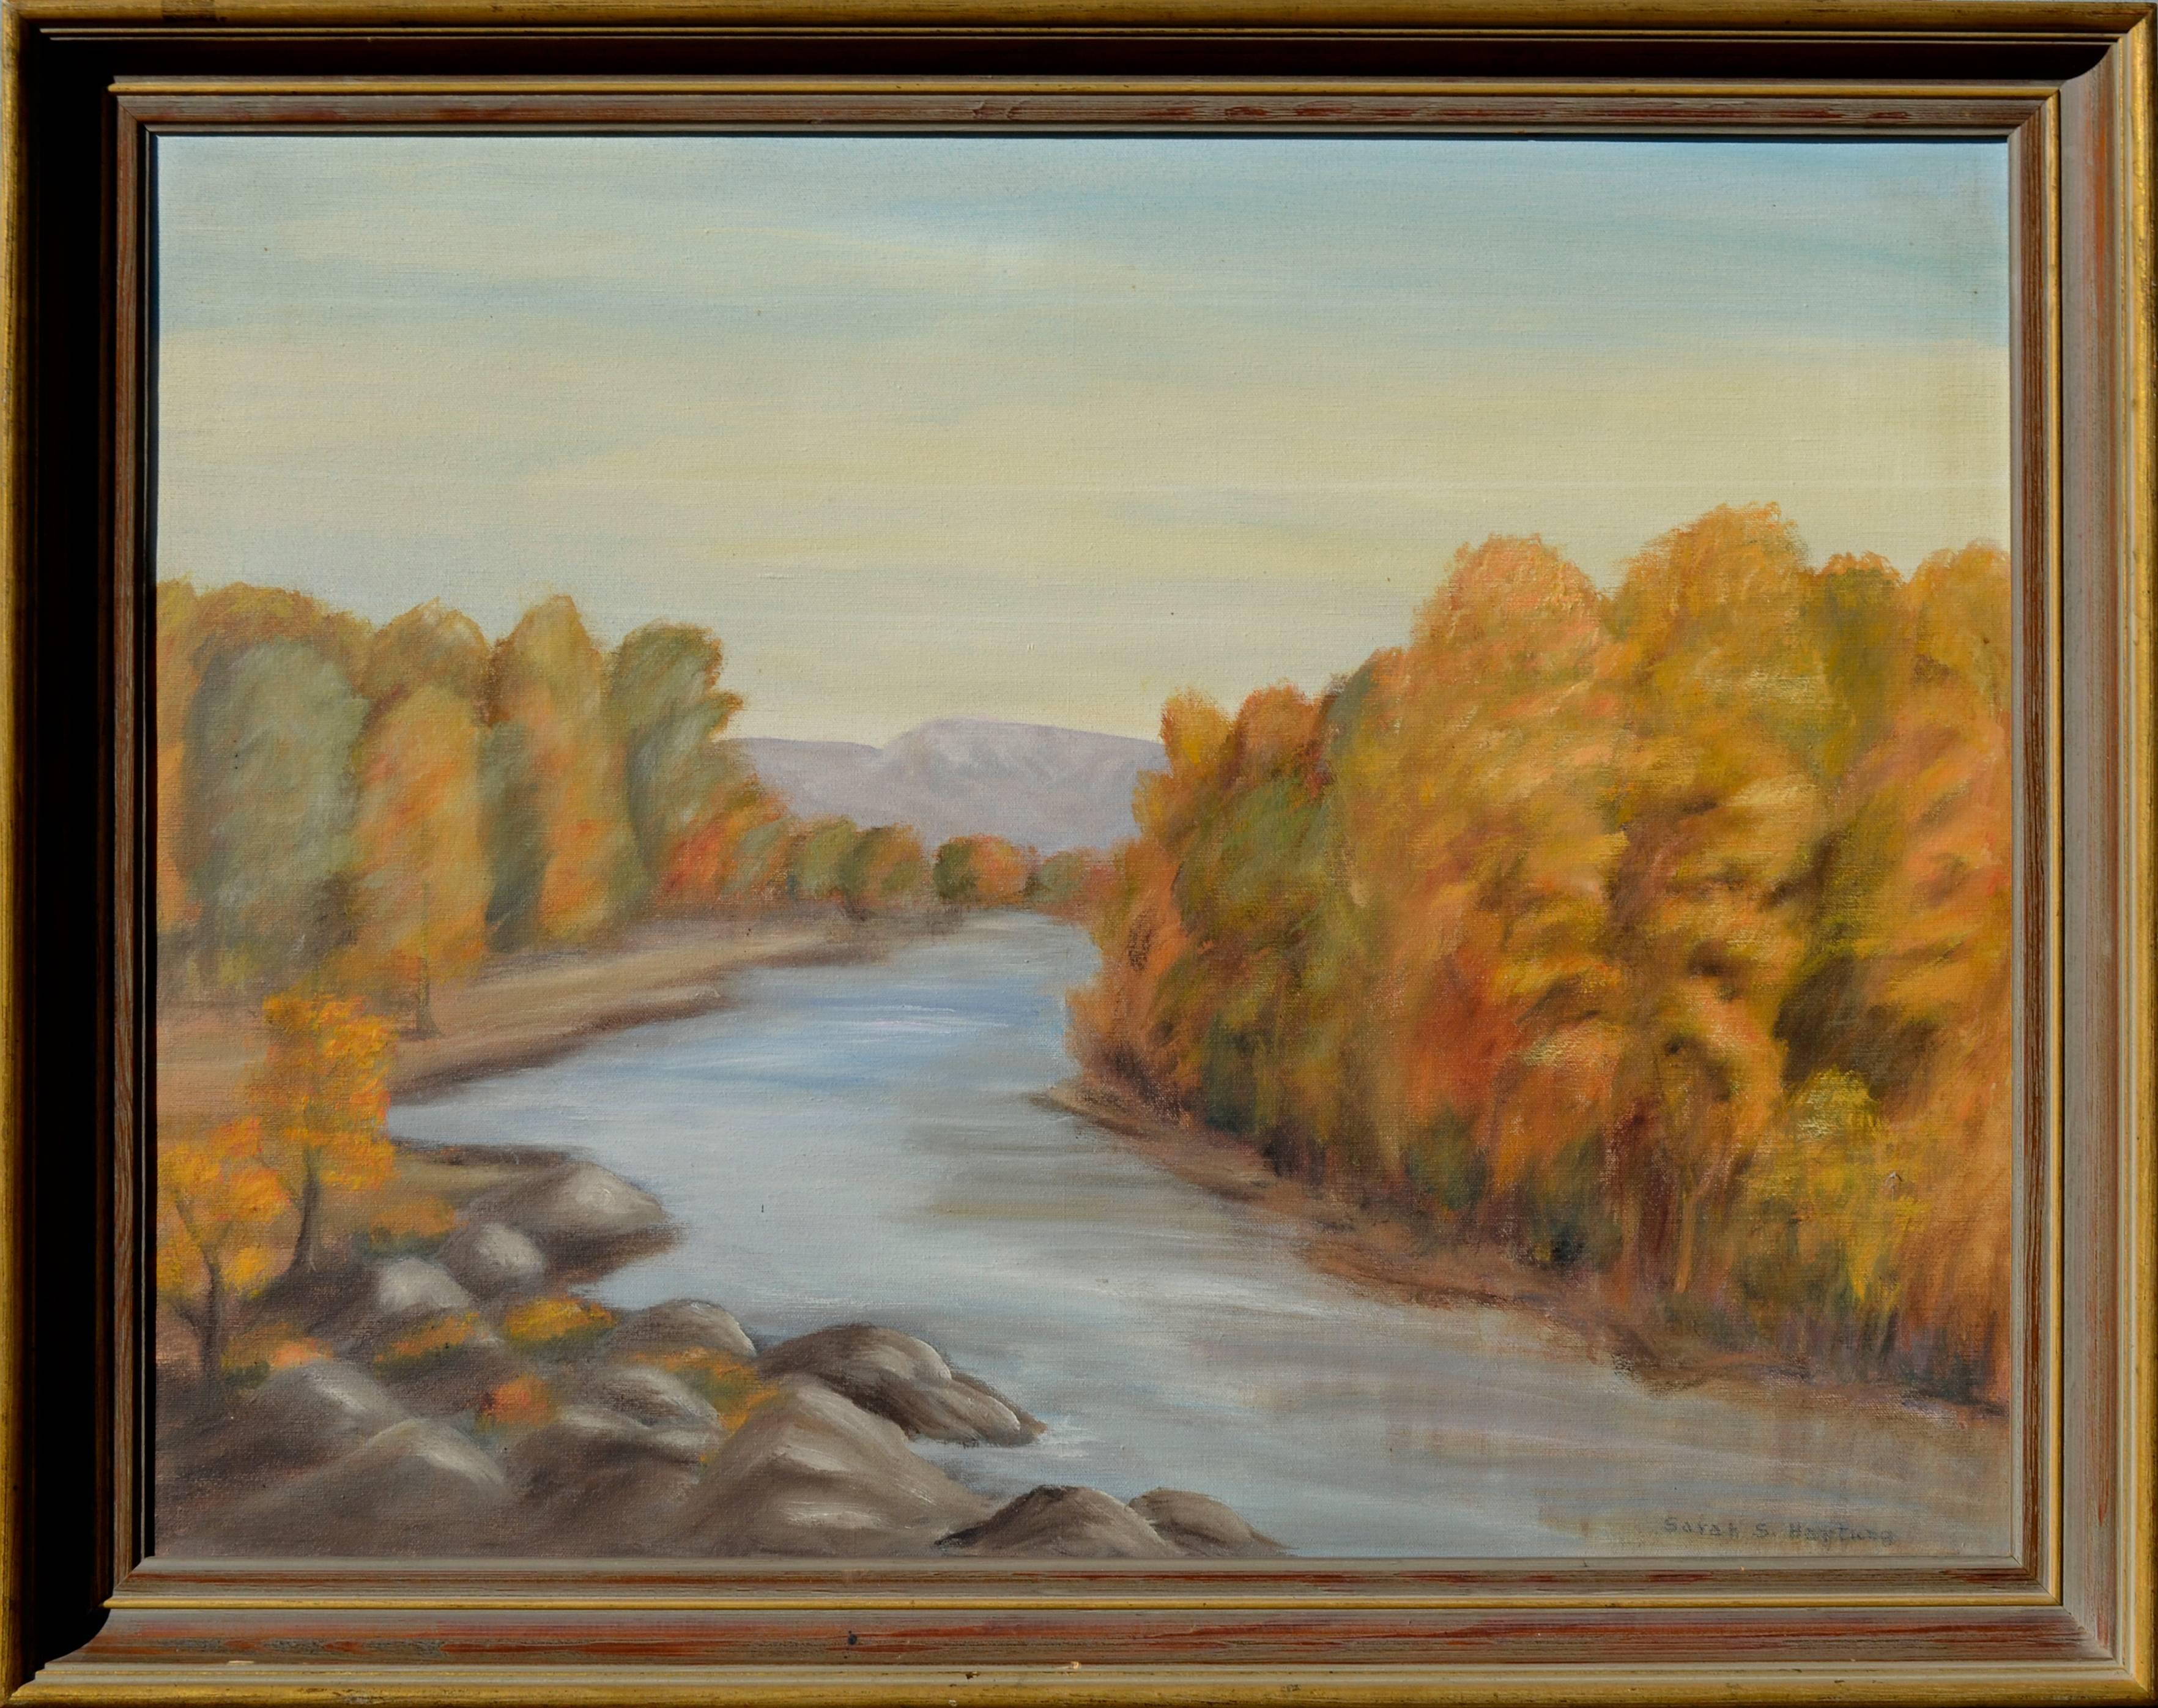 Sarah S. Hartung Landscape Painting - Autumn Trees - Mid Century Landscape 